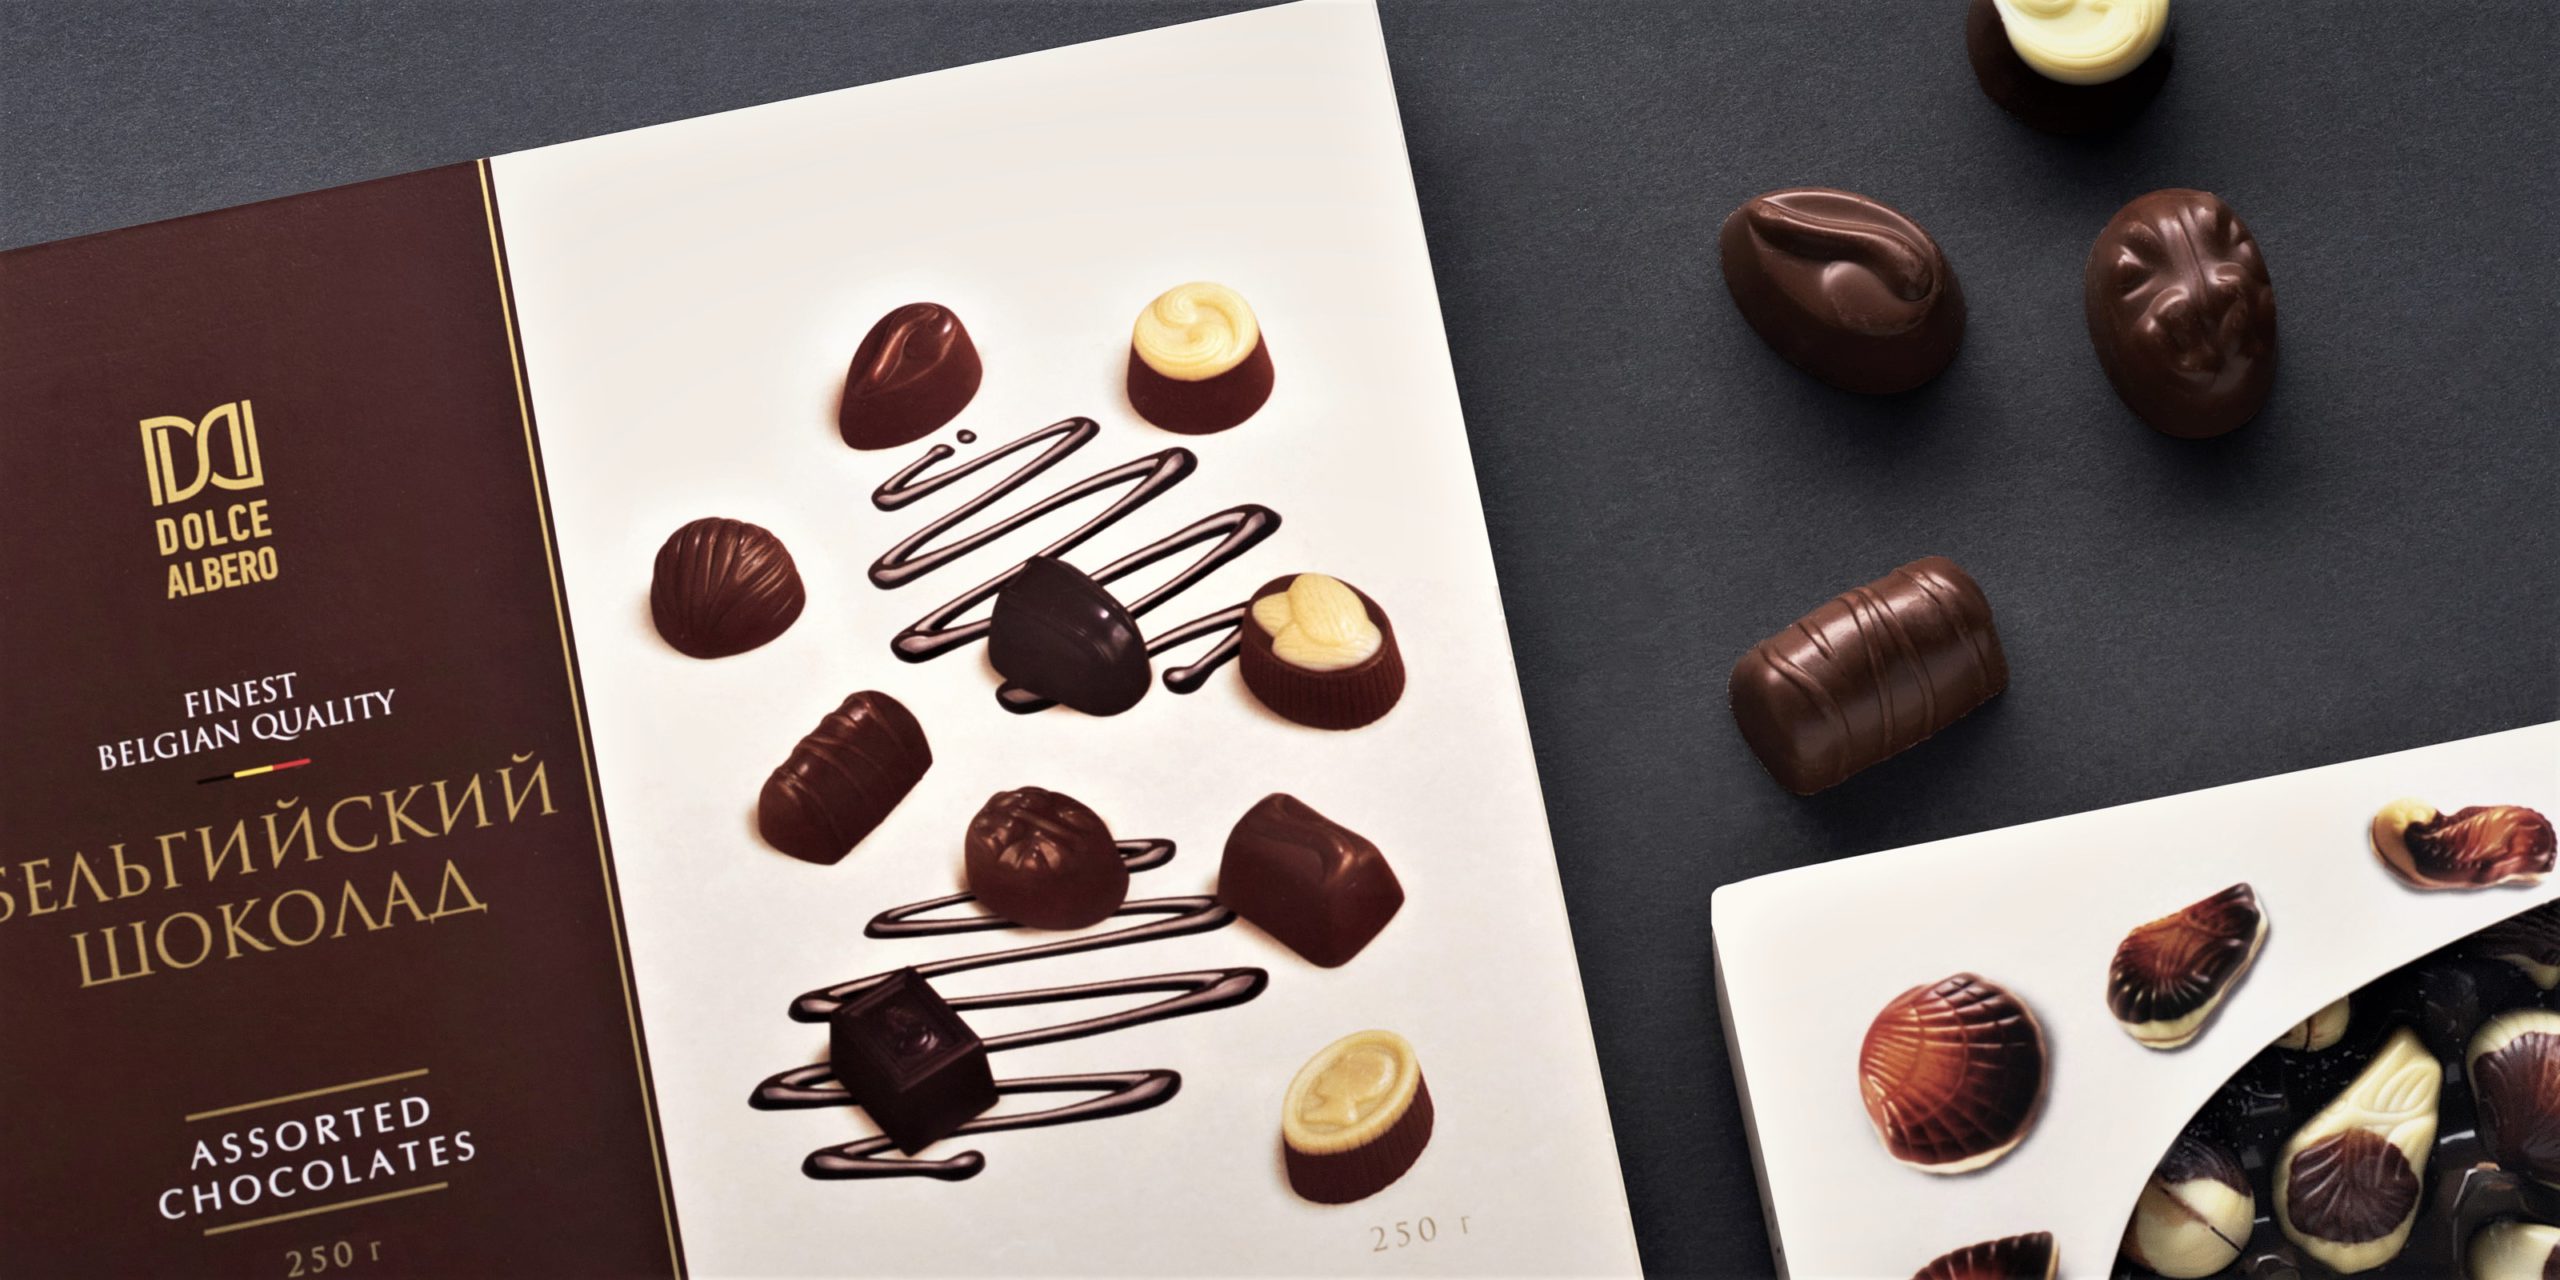 Лучший бельгийский шоколад. Бельгийский шоколад Дольче Альберо. Шоколад Dolce Vita. Ассорти конфеты из бельгийского шоколада.